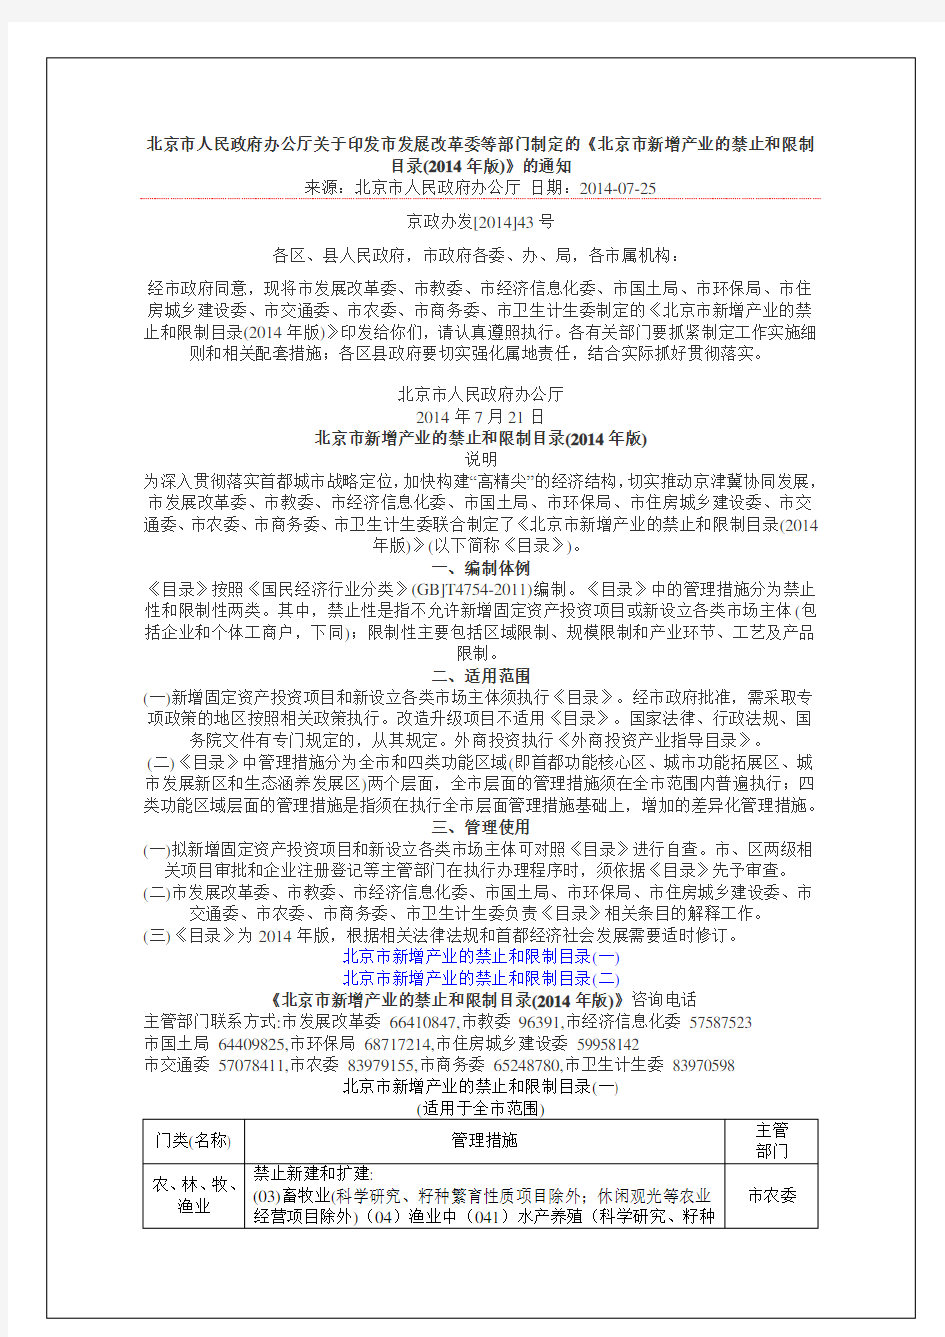 《北京市新增产业的禁止和限制目录(2014年版)》的通知及名录